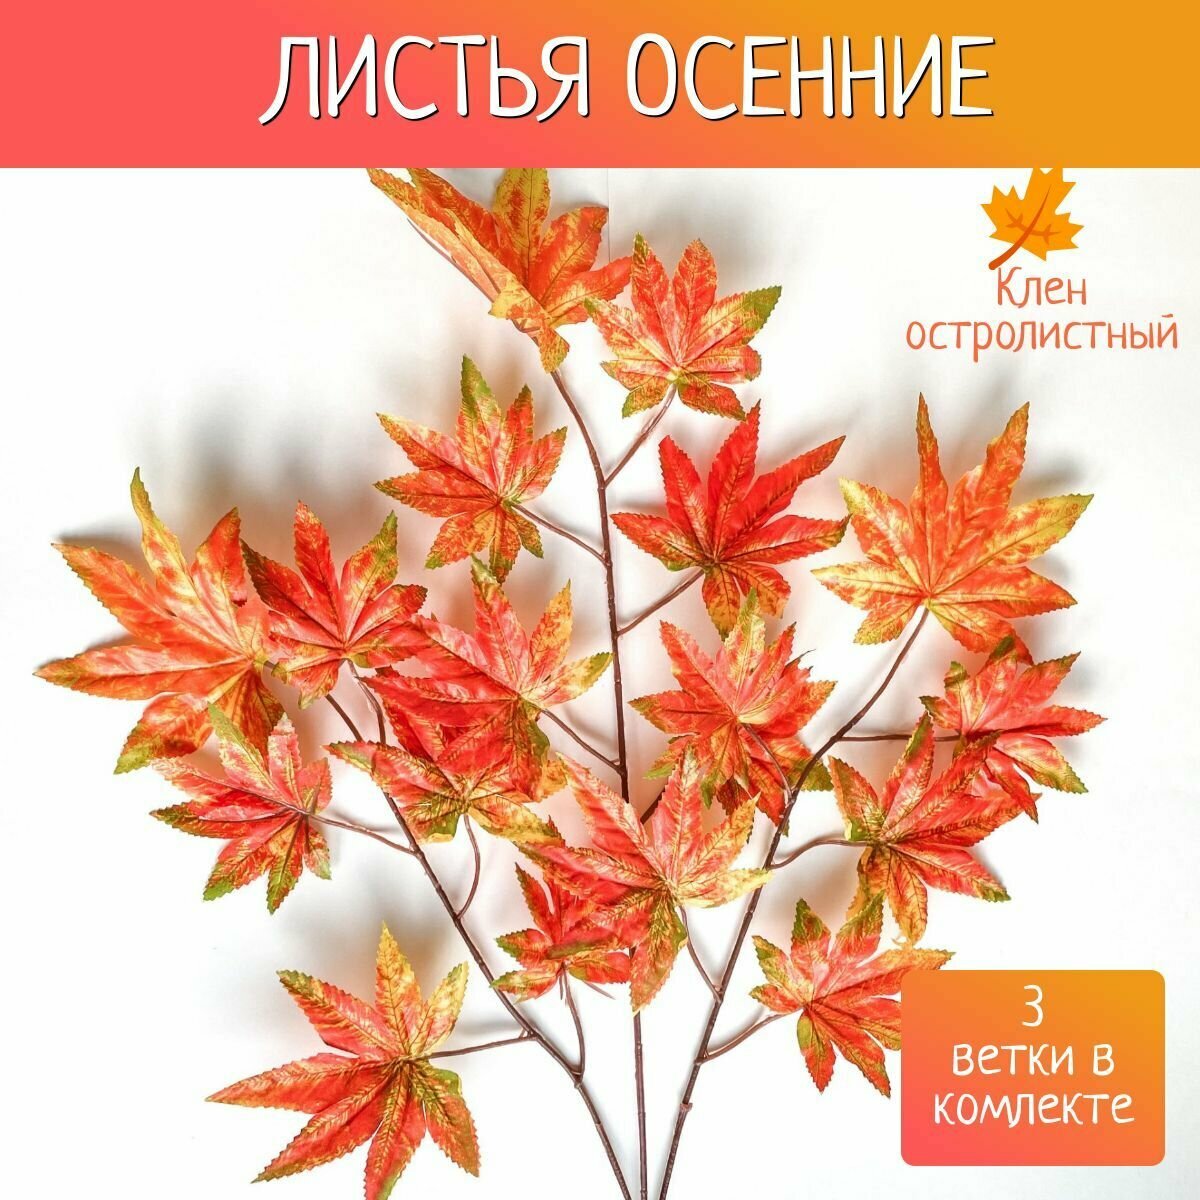 Осенние листья для декора клен остролистный 3 ветки